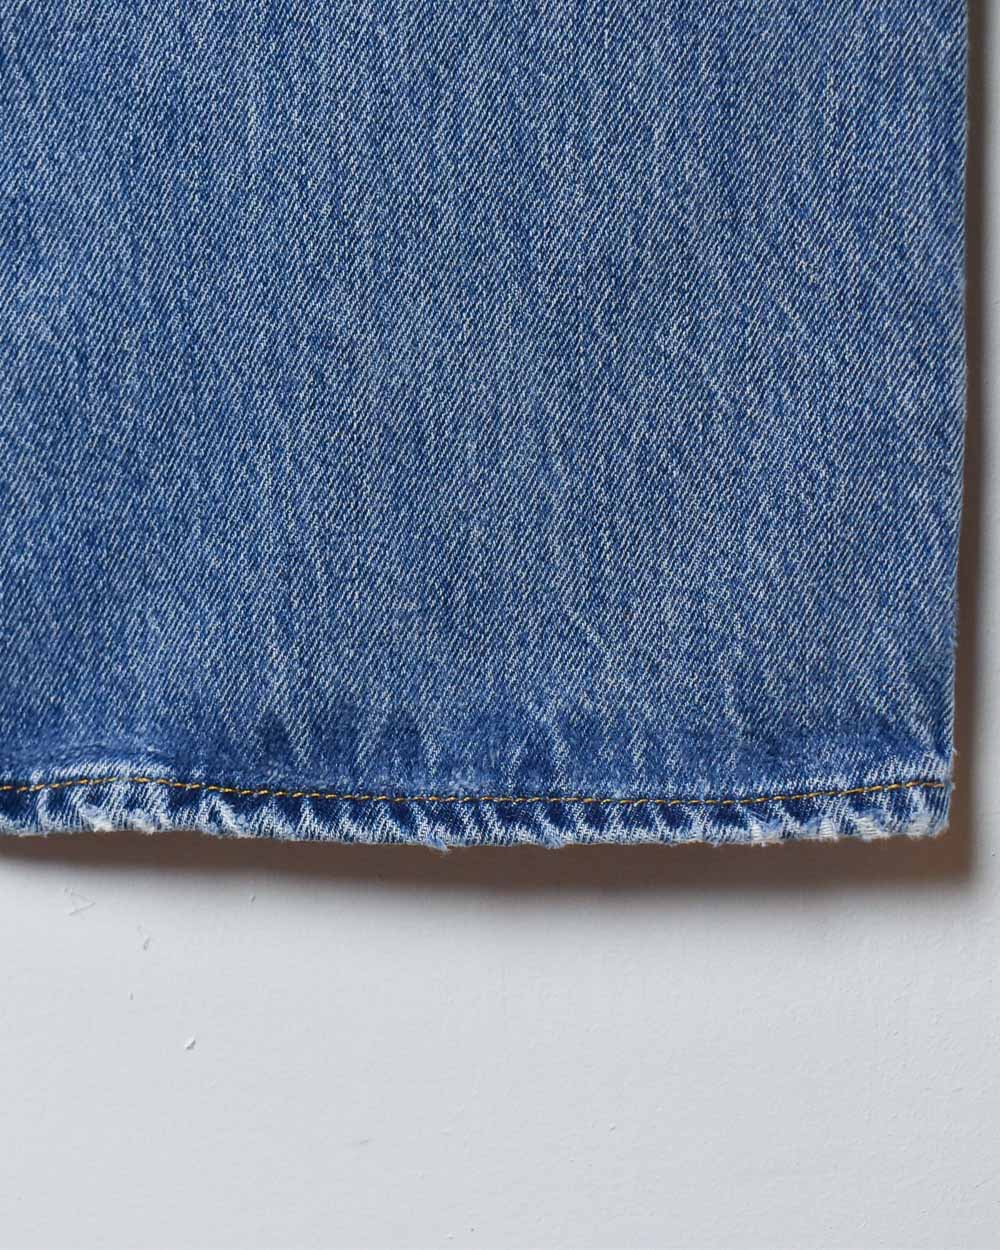 Blue Levi's 501 Jeans - W36 L31